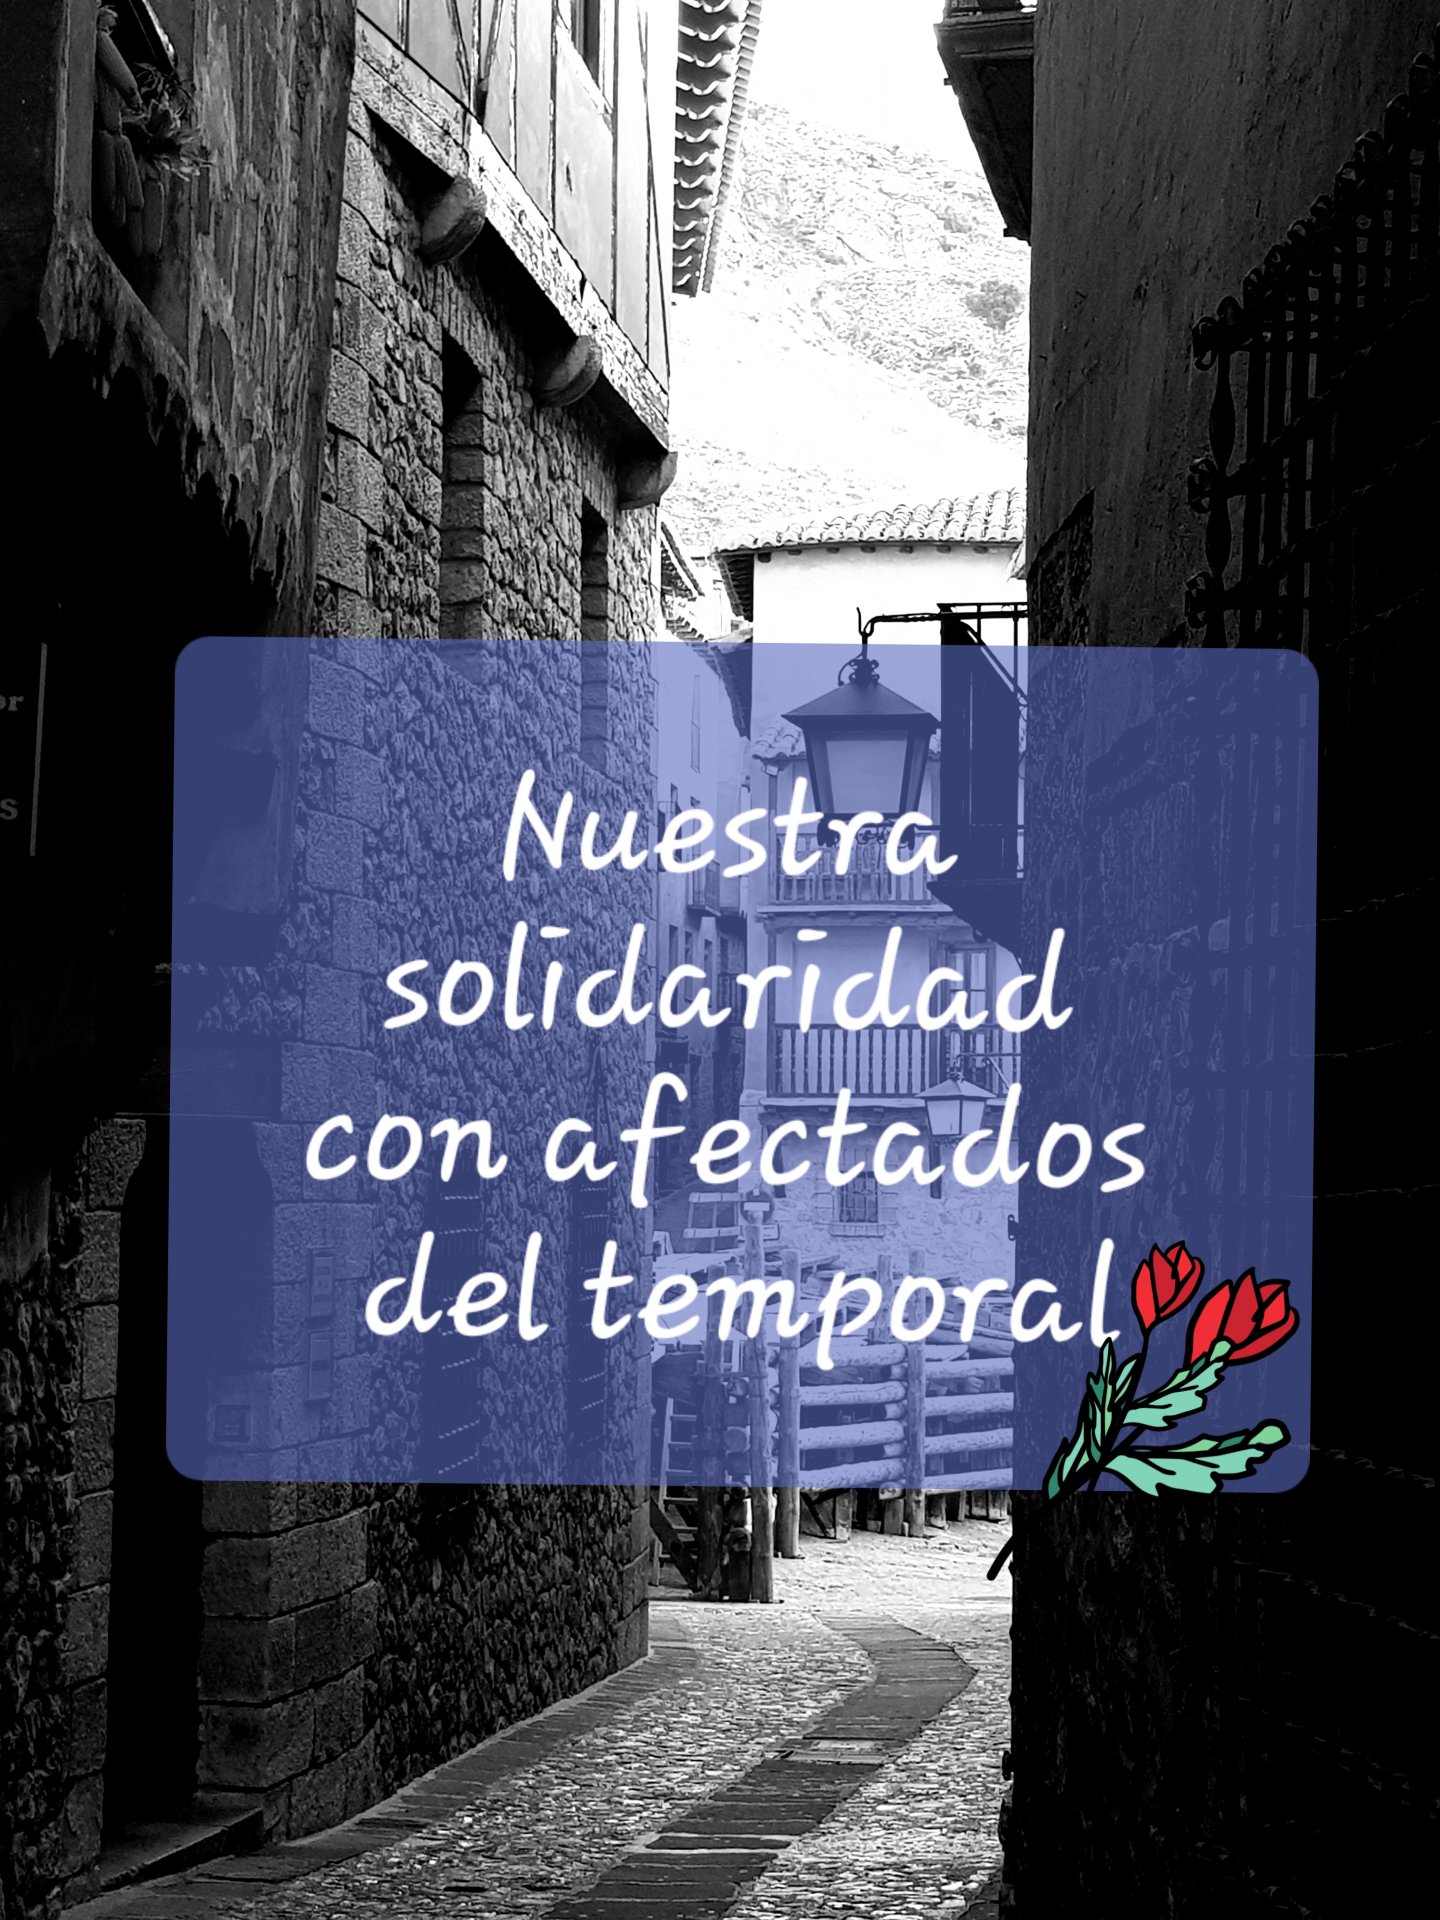 Nuestra solidaridad con los afectados por el temporal en el Levante…fuerza y ánimo desde Albarracín y Teruel